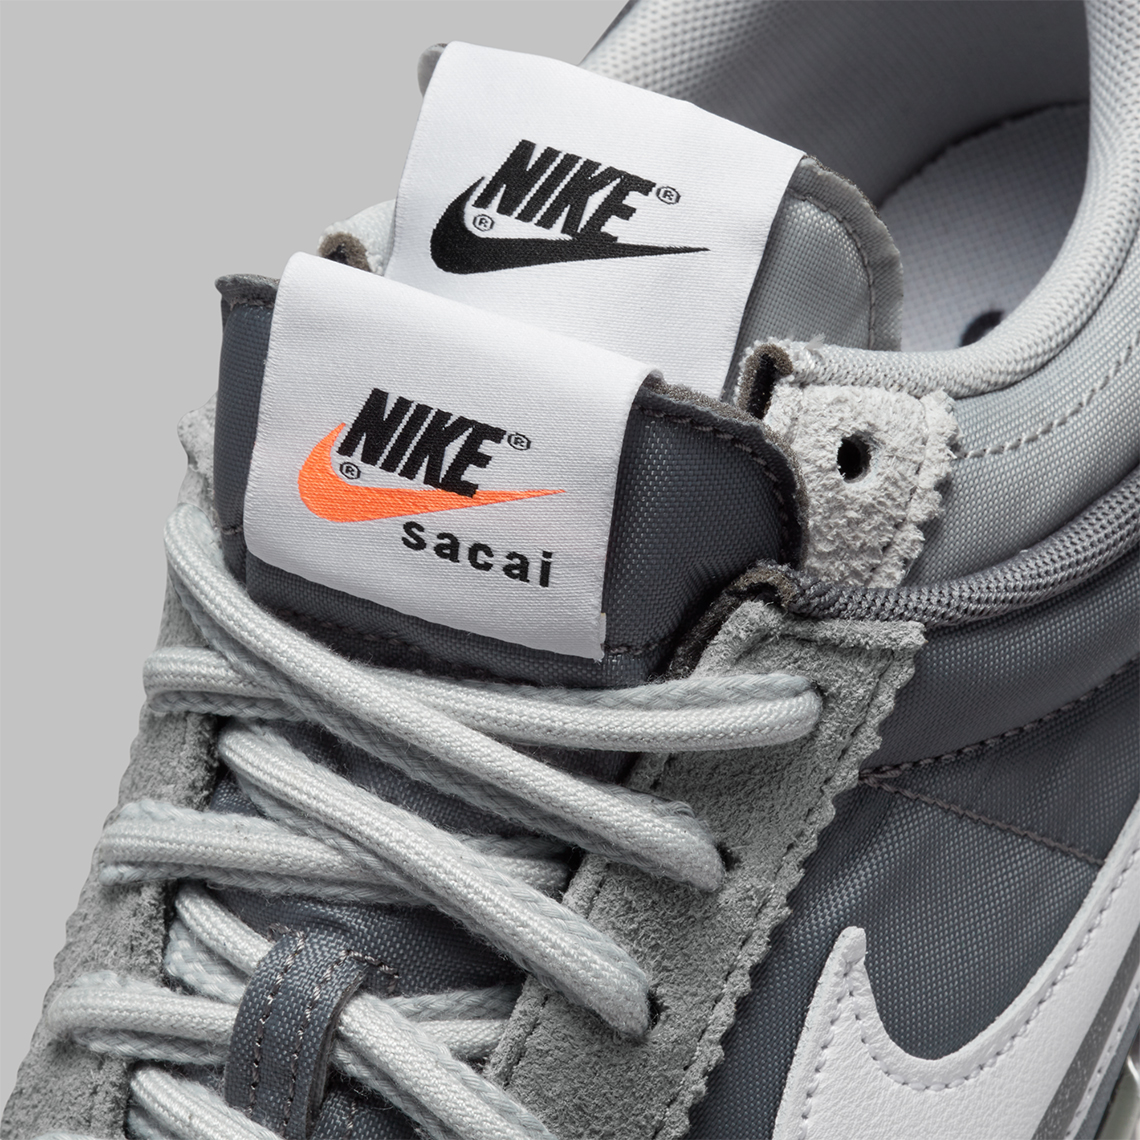 Nike Cortez Sacai Grey White Dq0581 001 9